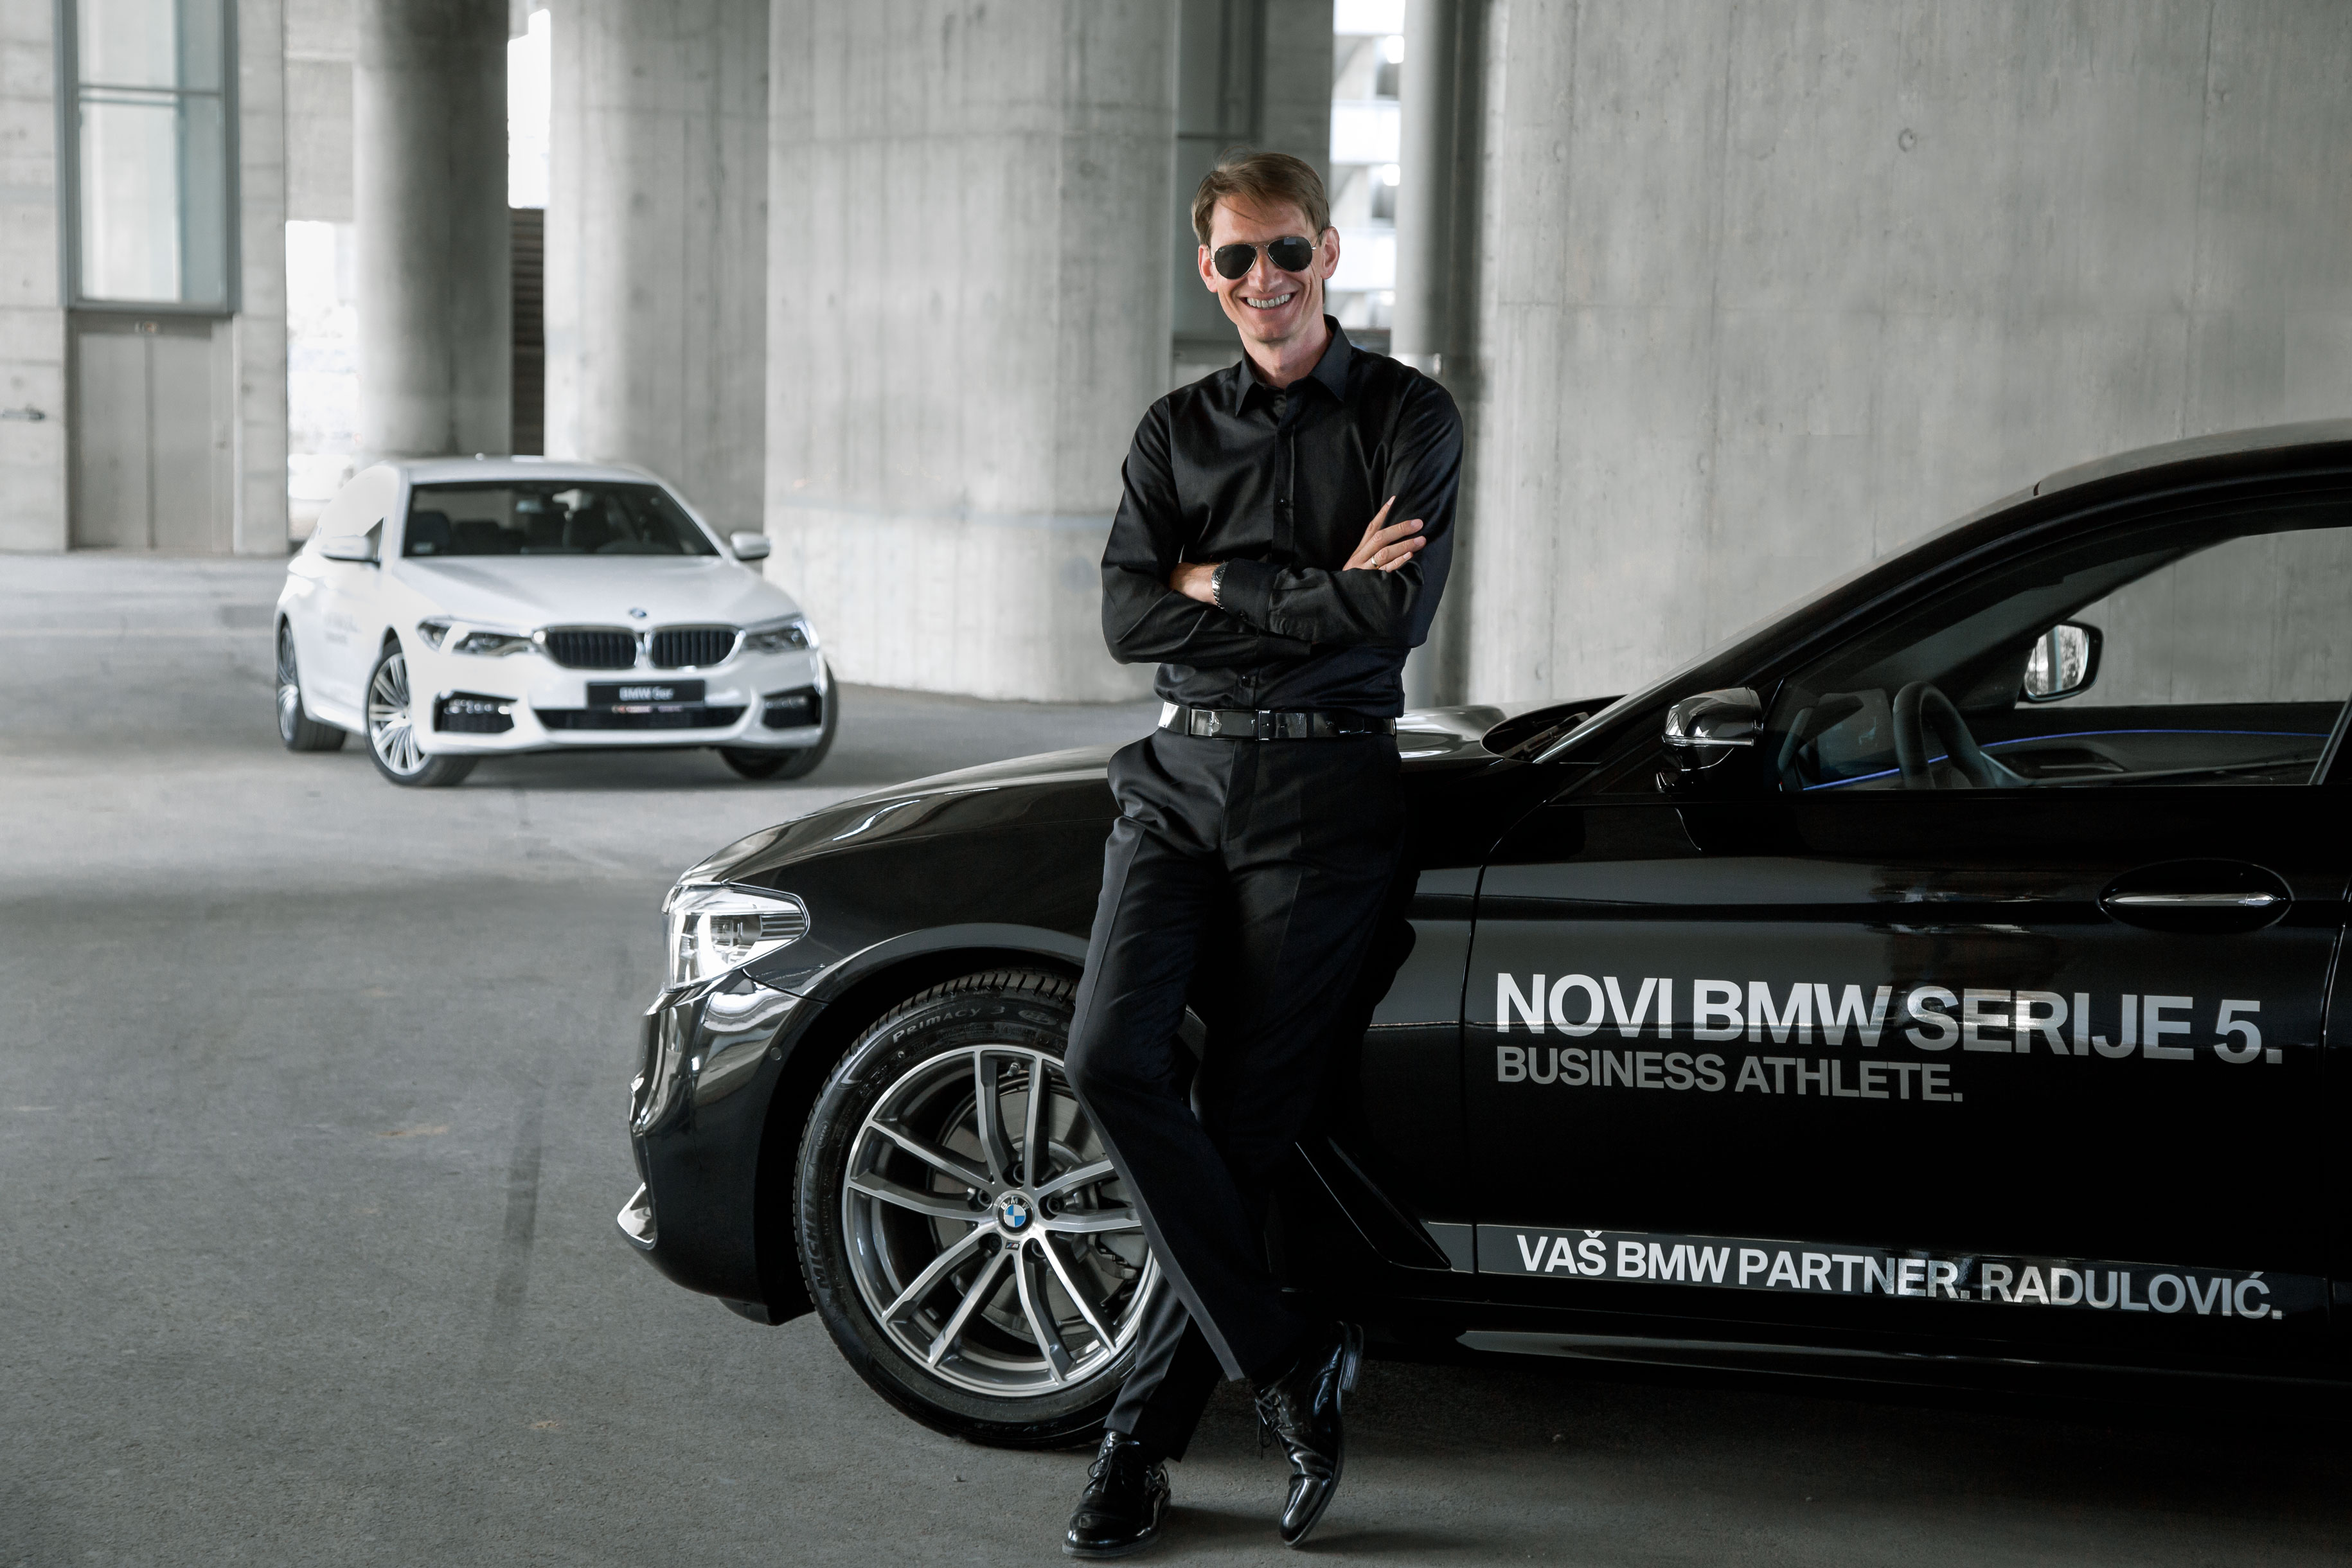 MOBIL AUTO TV – Kompanija Radulovic uručila ključ BMW-a serije 5 treneru Goranu Obradoviću